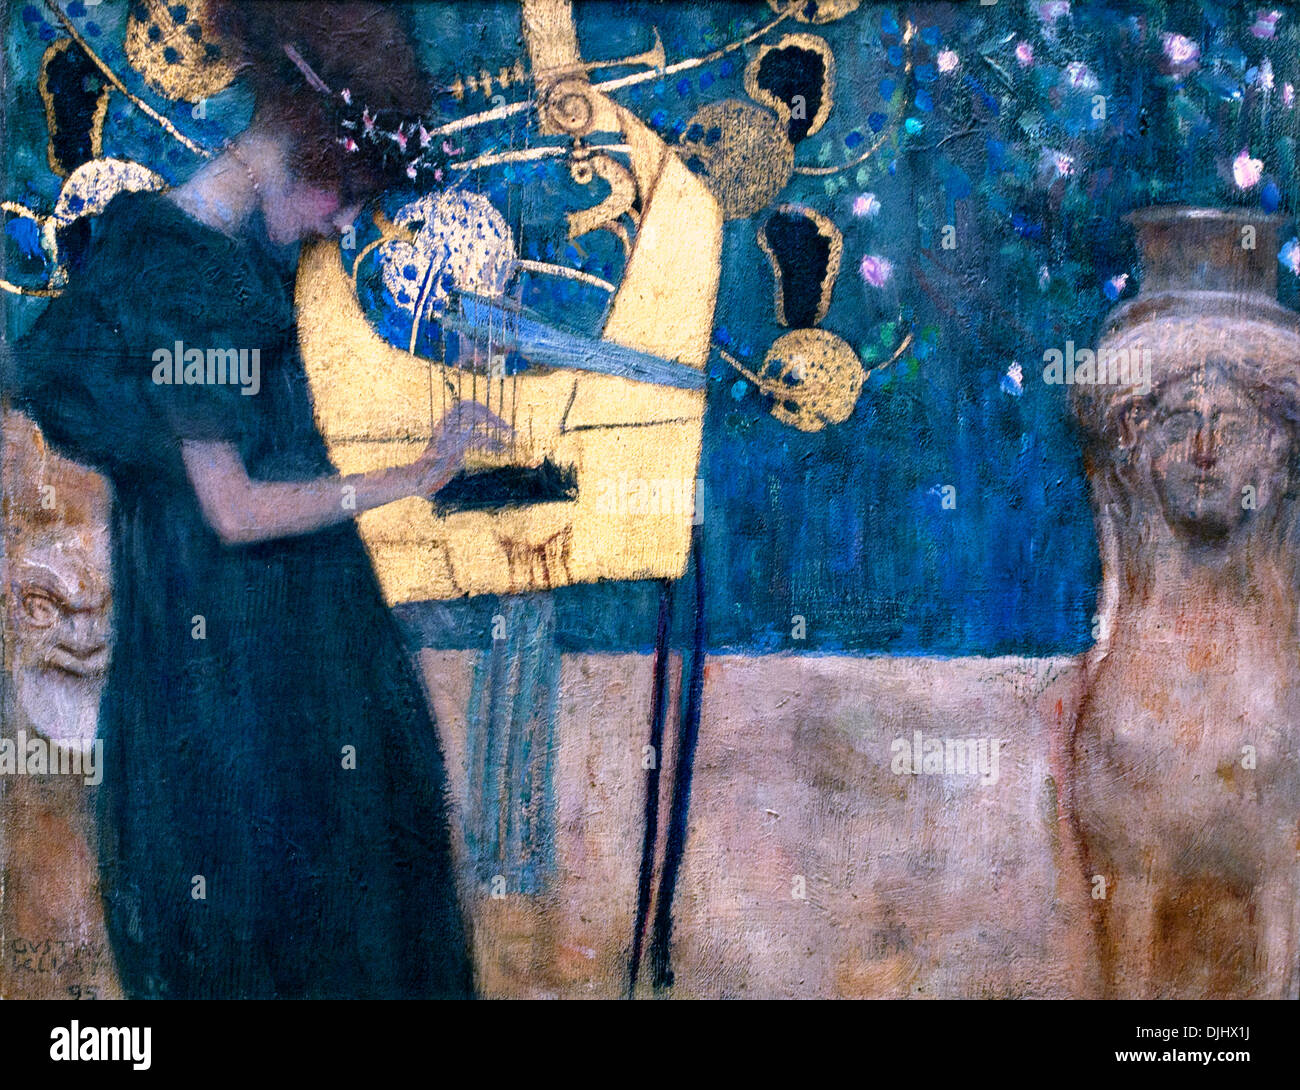 La música (1895) Austria austríaco Gustav Klimt 1862 - 1918 pintor simbolista austríaco del movimiento de Secesión de Viena Austria Foto de stock